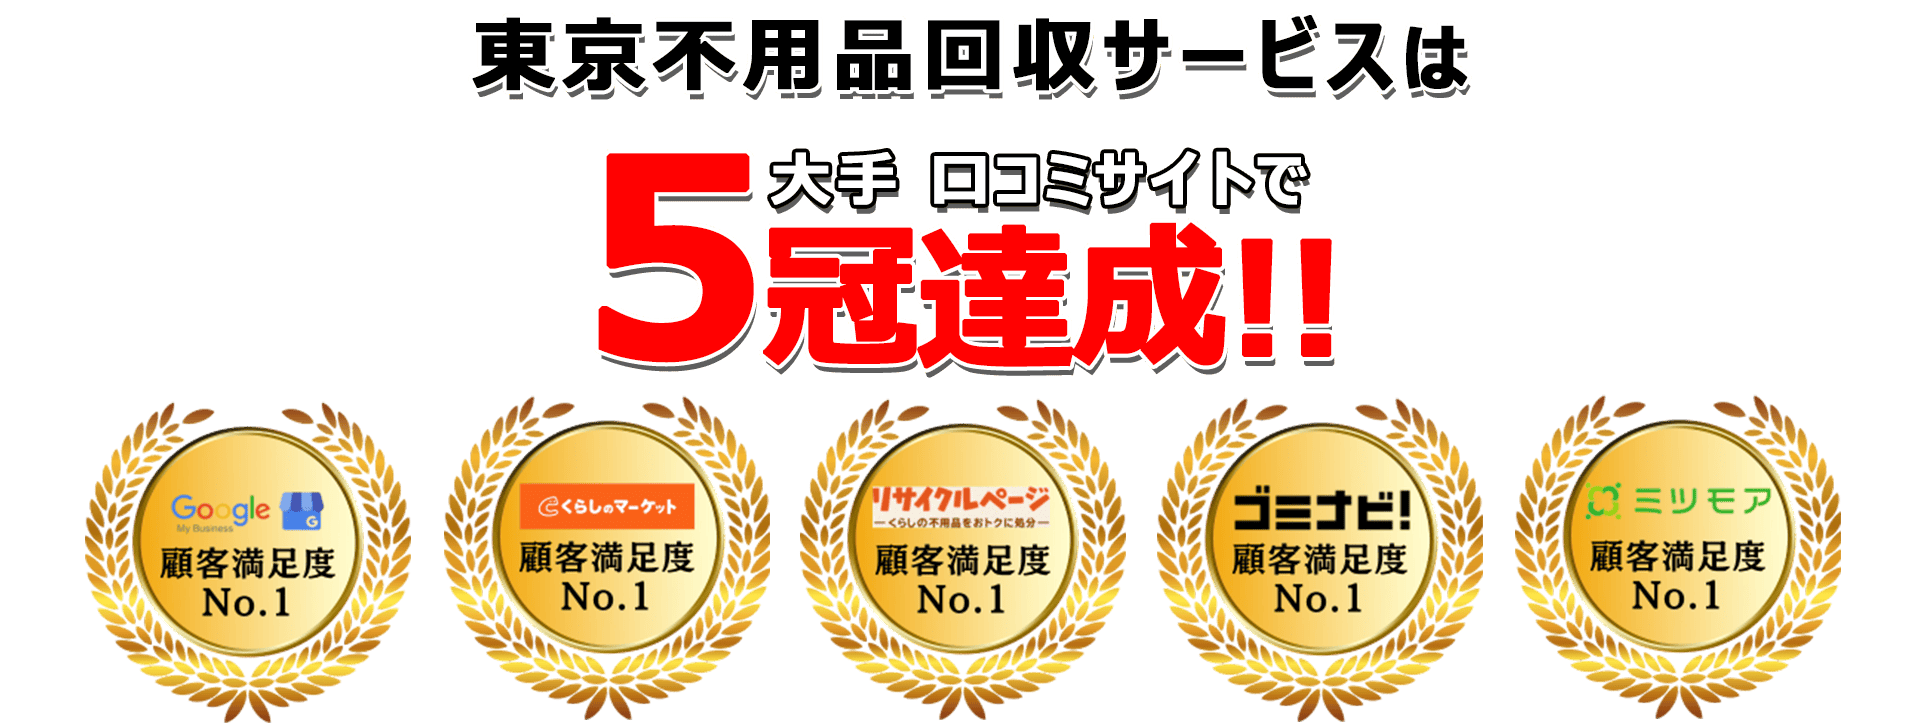 日本不用品回収サービスは口コミサイトで3年連続最高評価を獲得